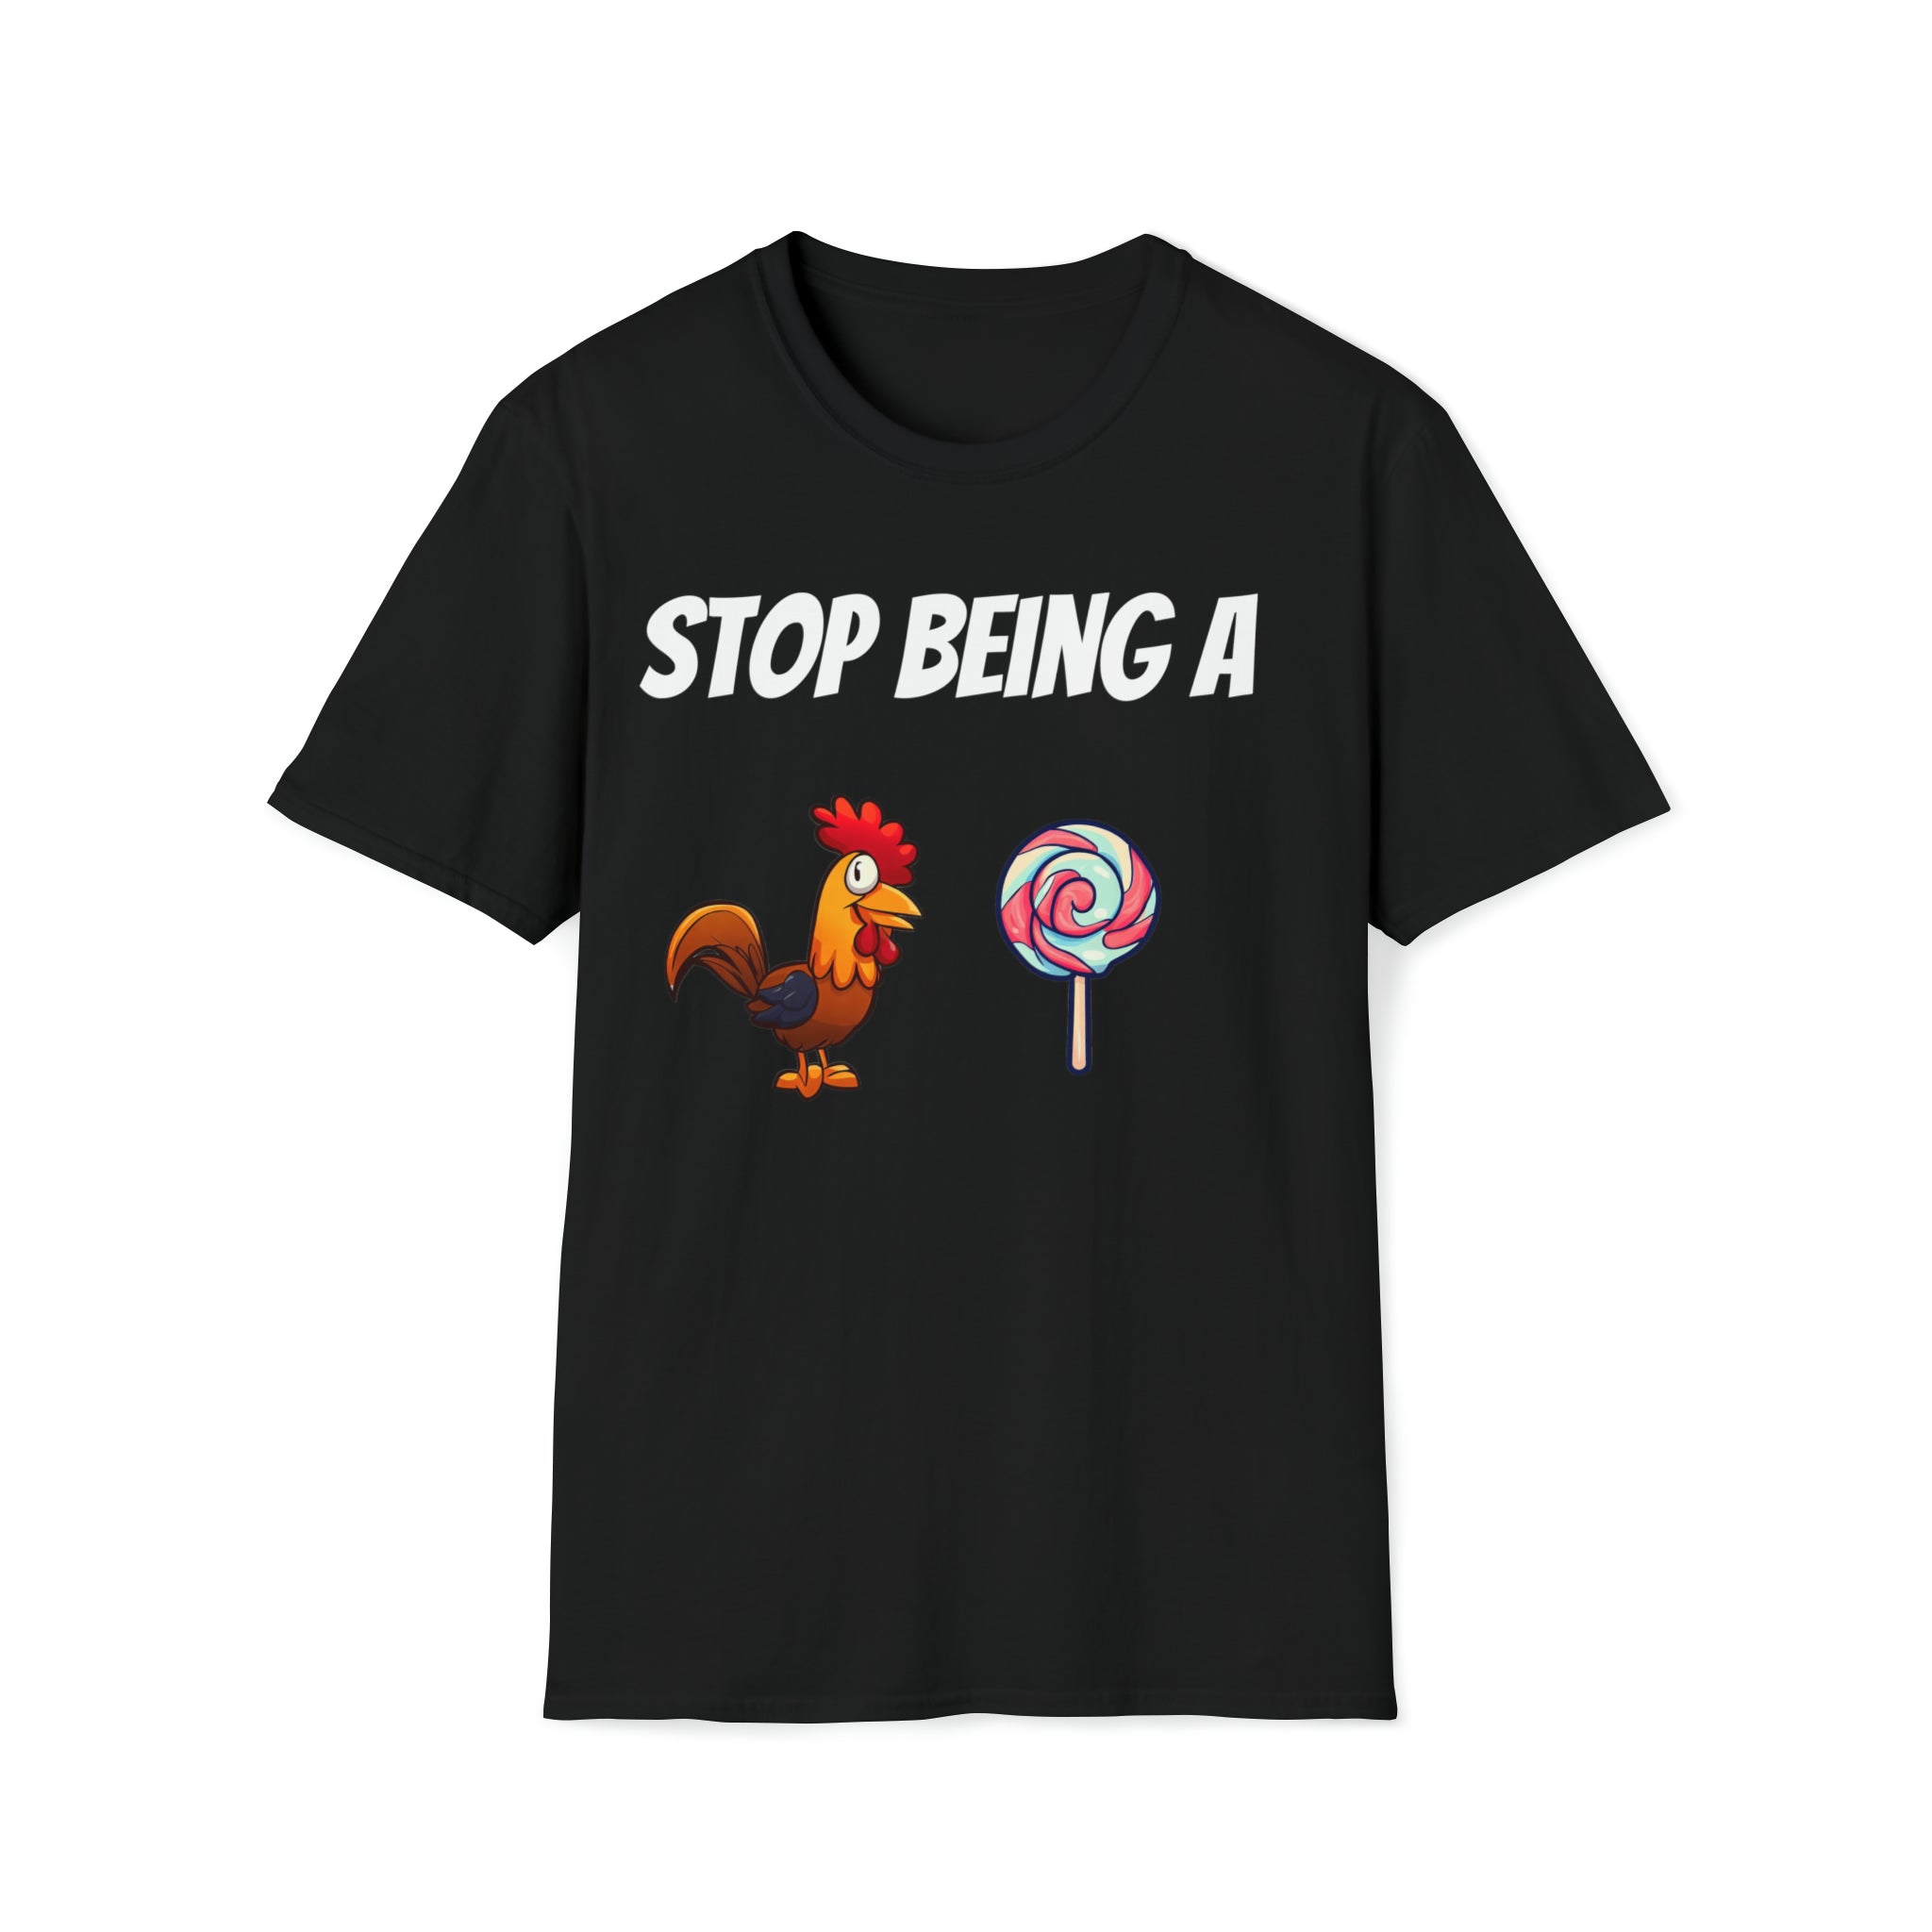 Stop being a cock sucker t-shirt, black tee, chicken and lollipop shirt